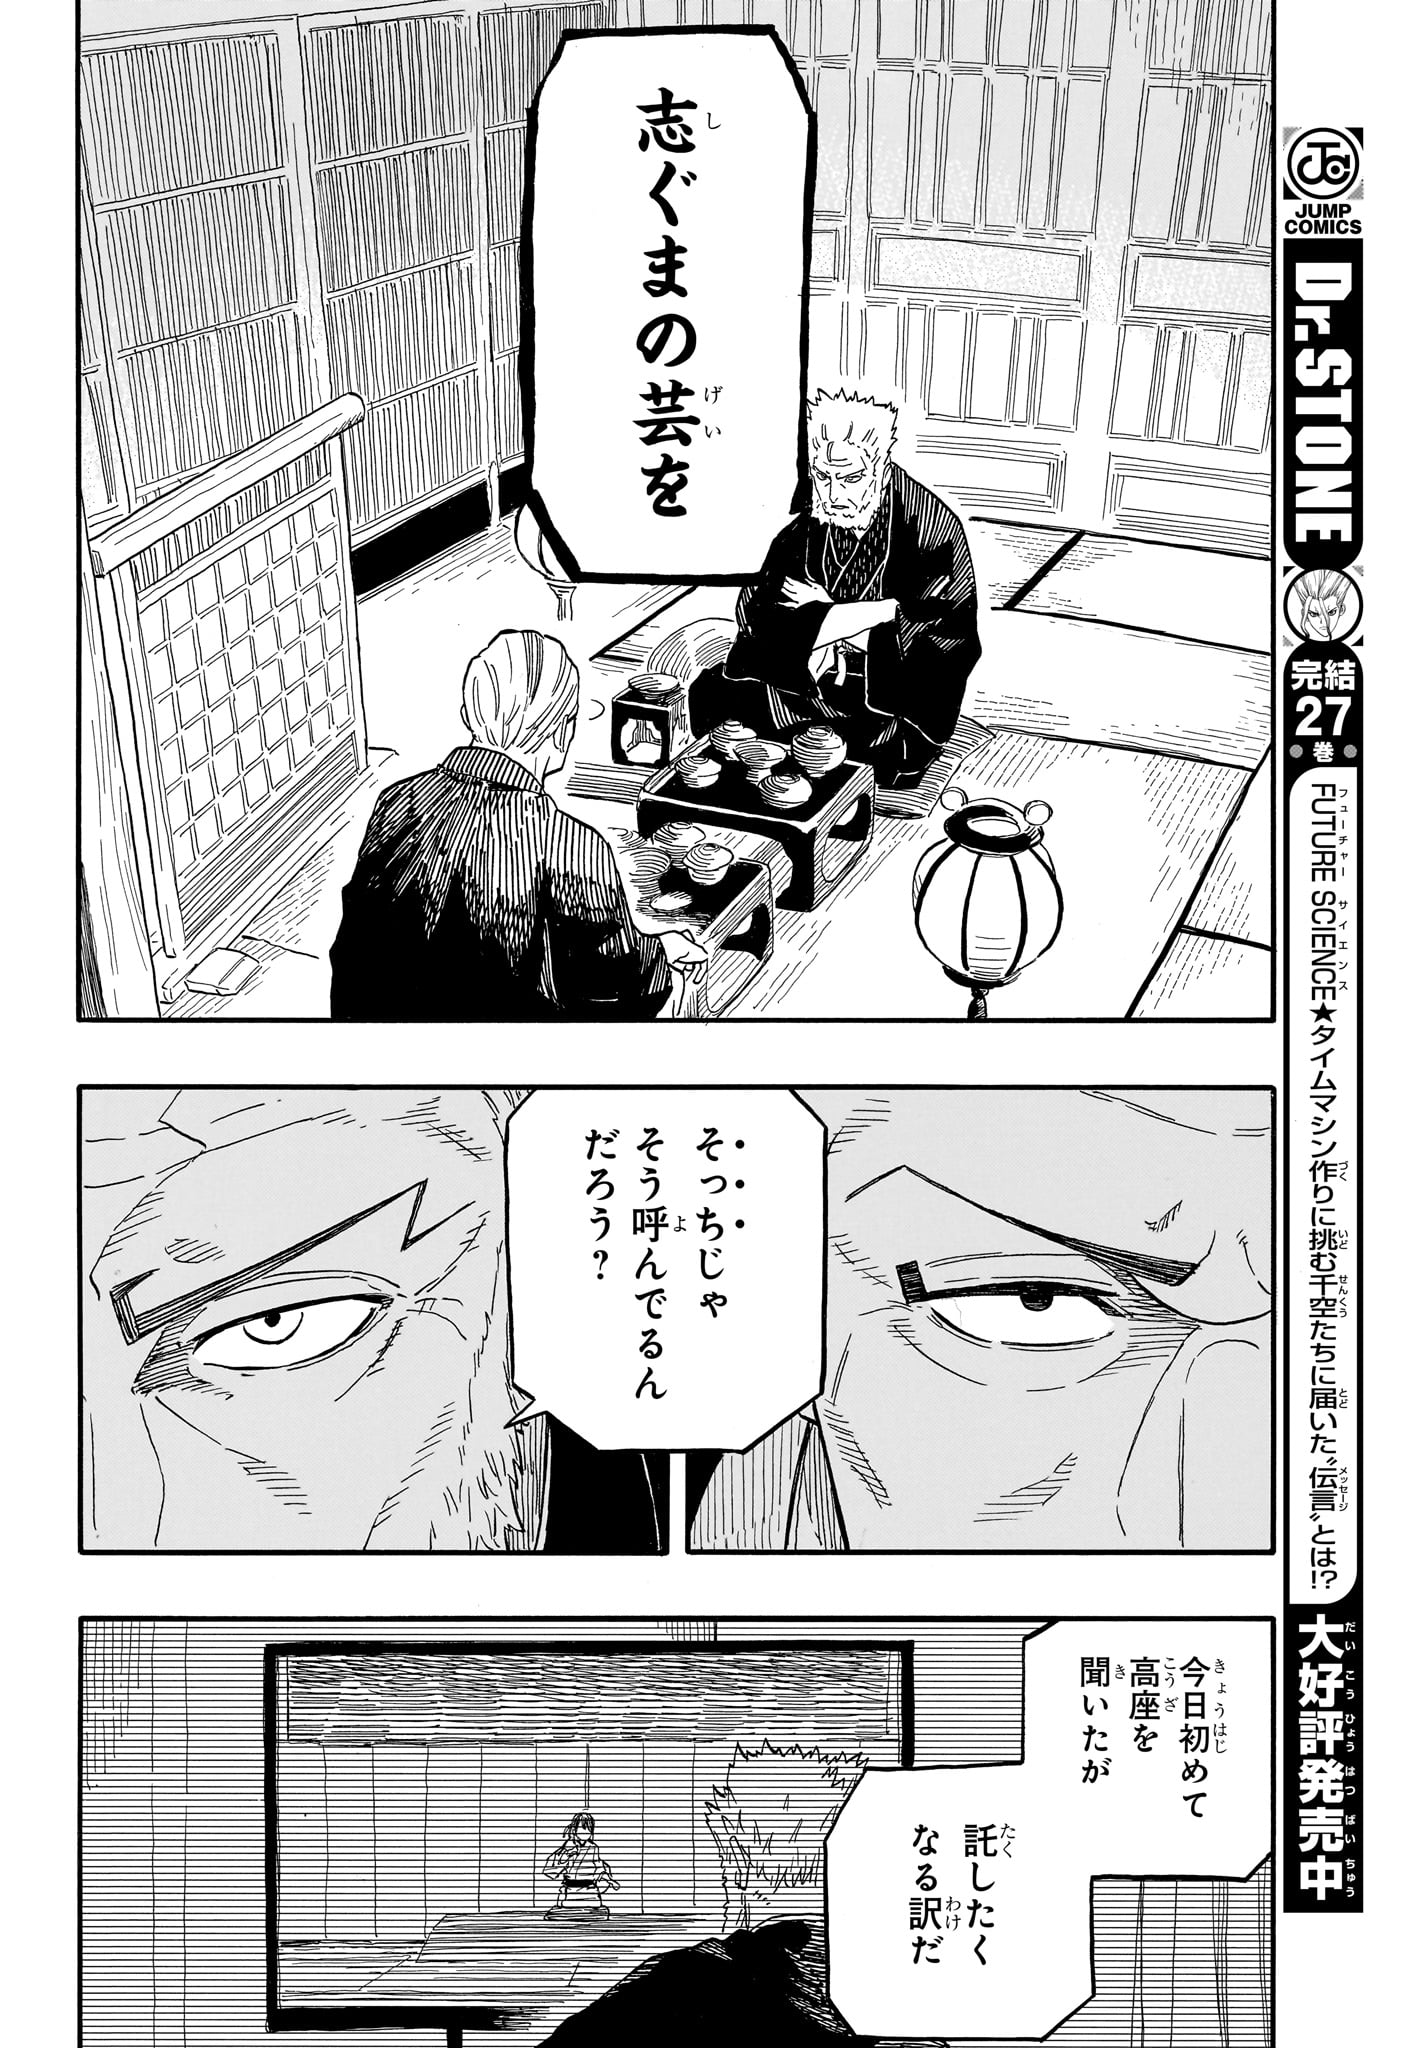 Akane-Banashi - Chapter 107 - Page 14